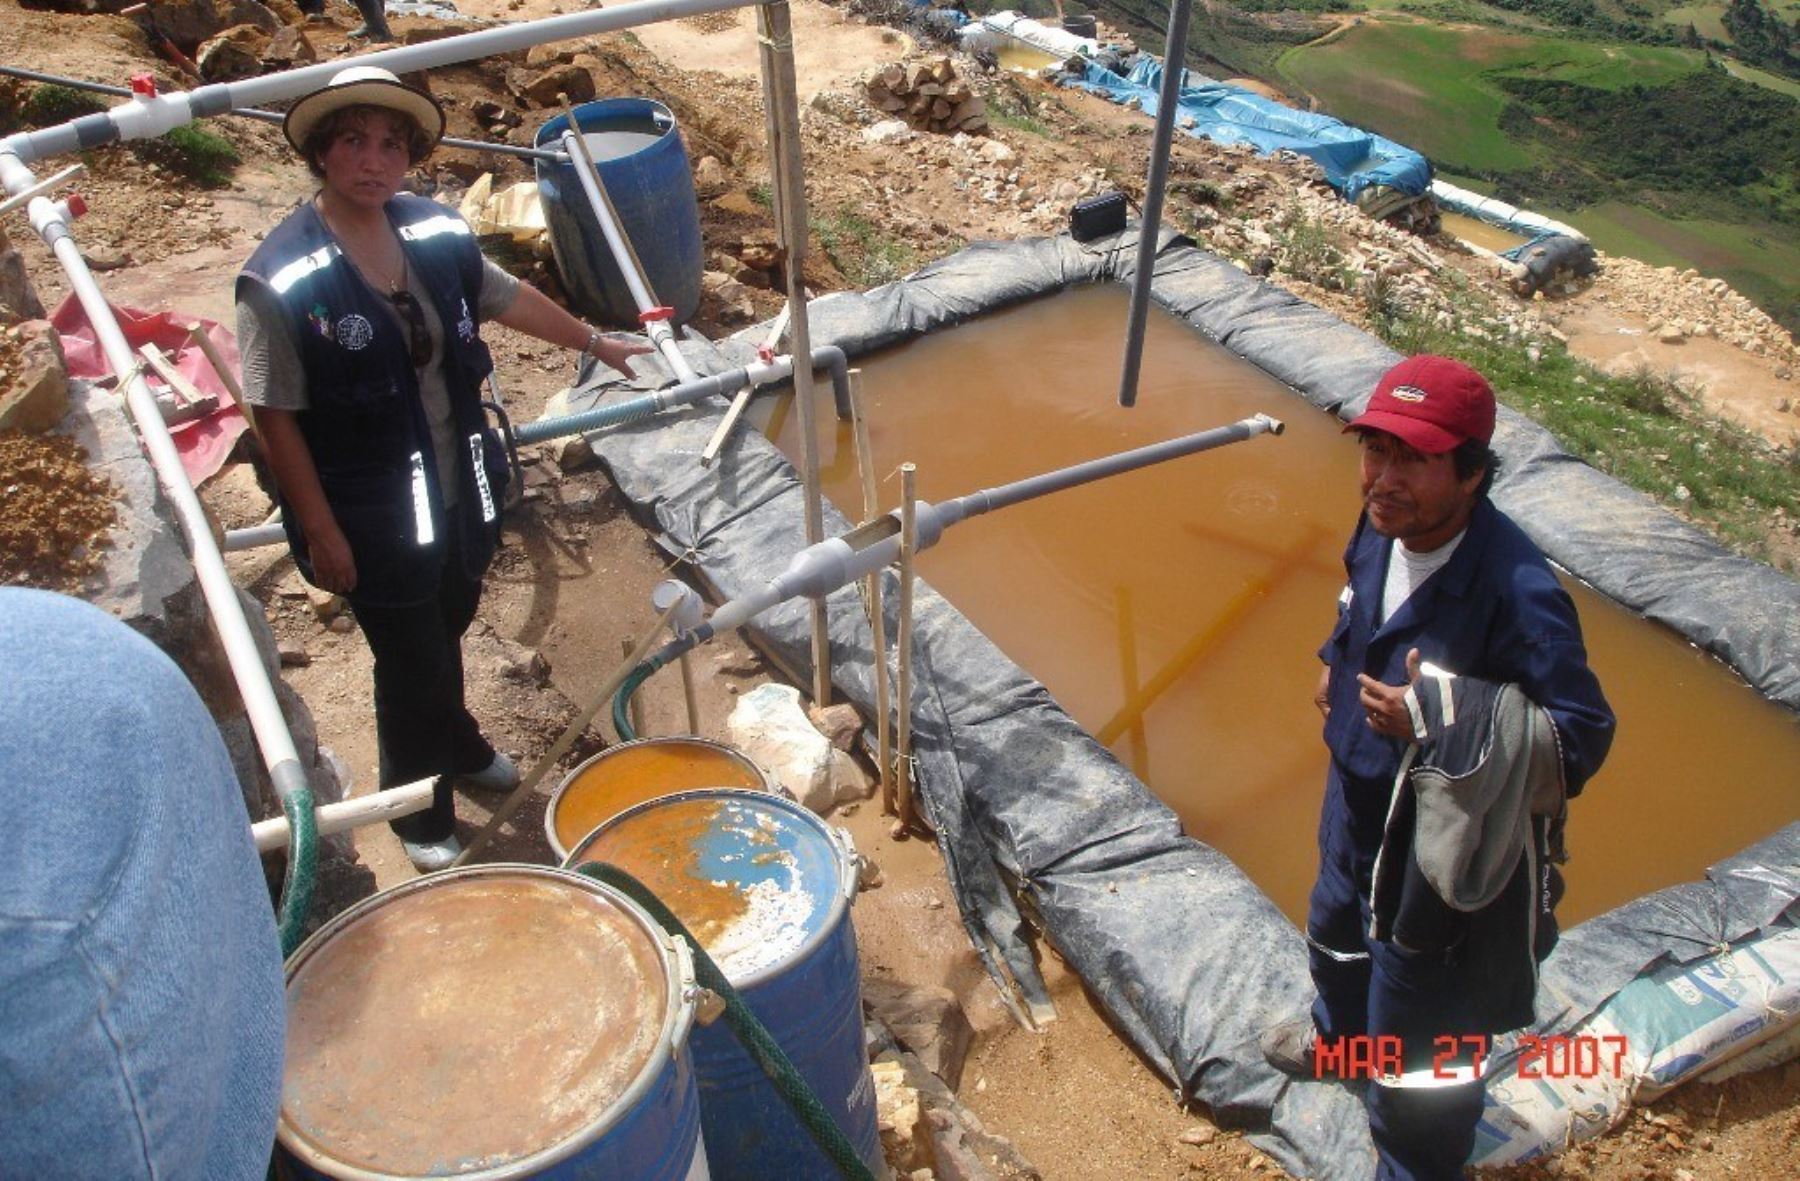 Los mineros ilegales que operan en Cajamarca vierten los insumos químicos a los ríos de la zona afectando la ecología. Foto: ANDINA/Archivo.